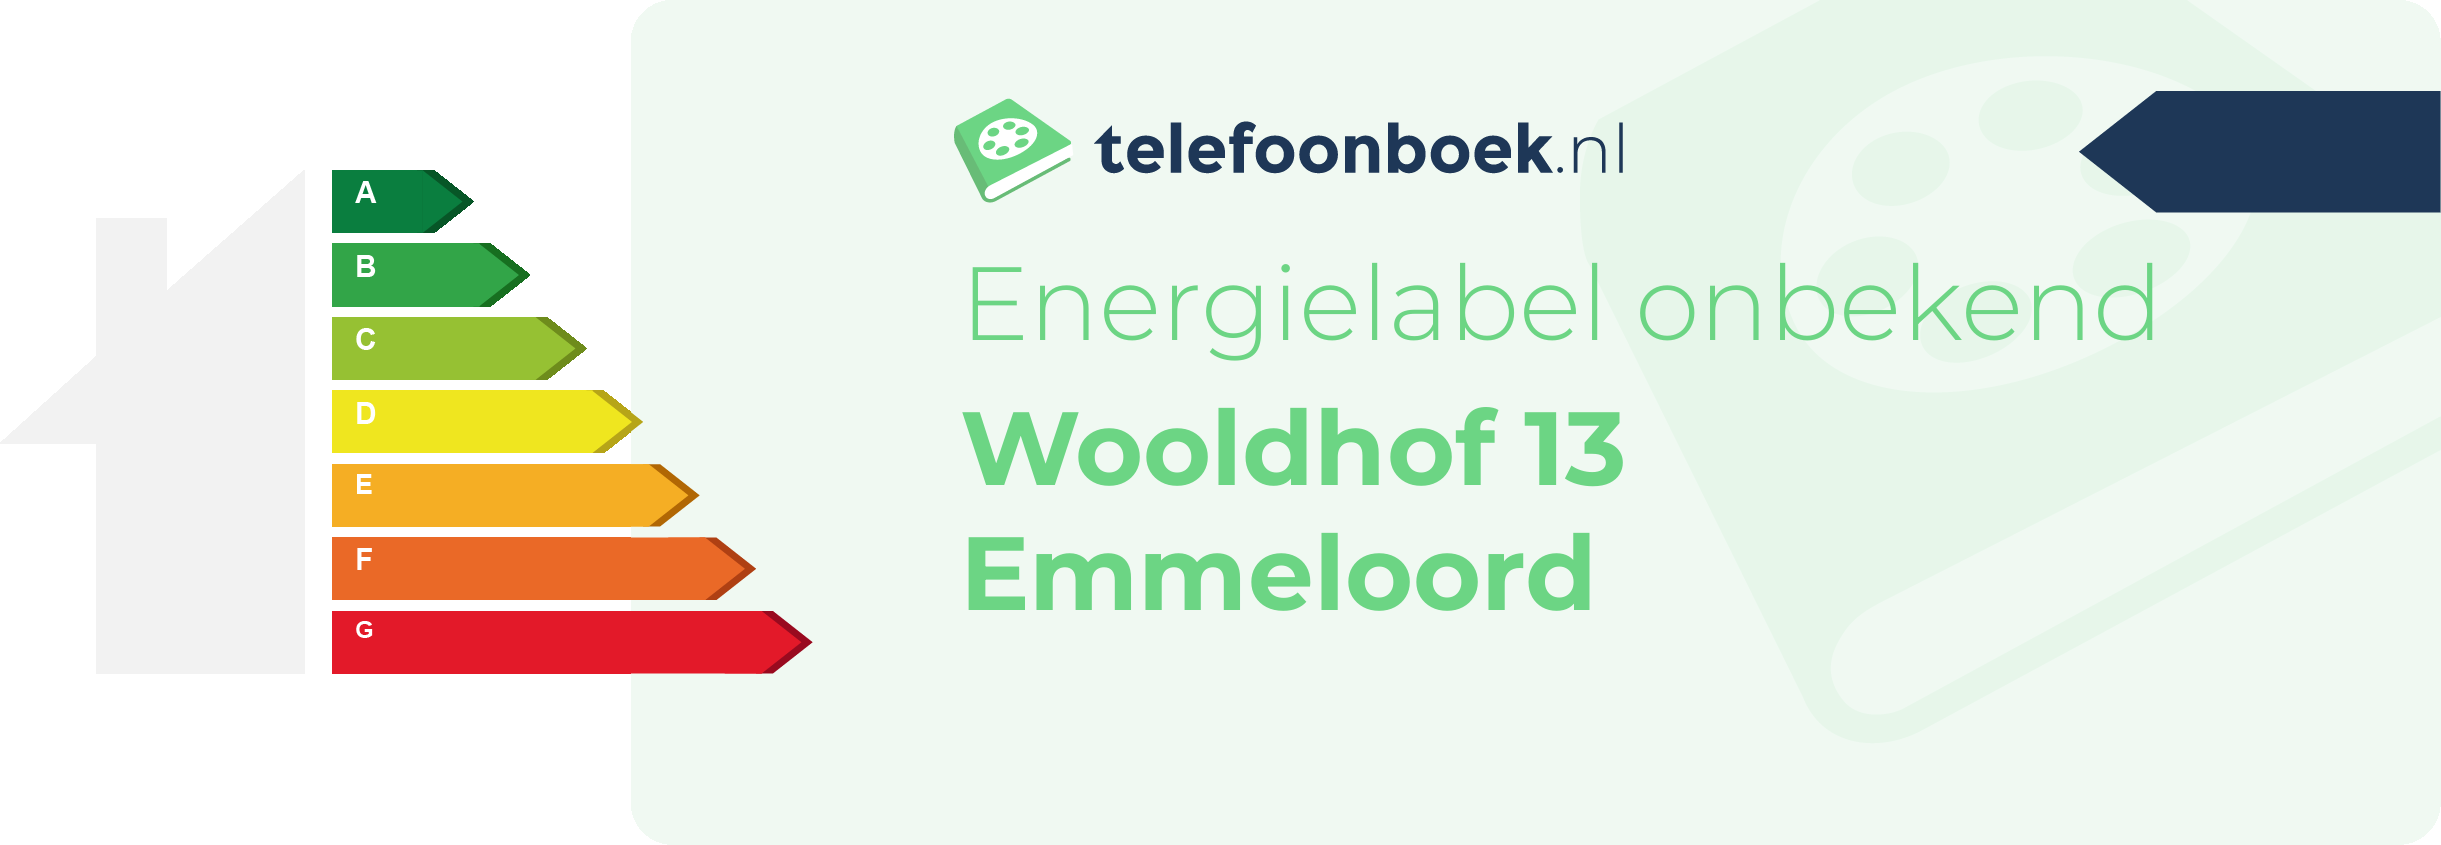 Energielabel Wooldhof 13 Emmeloord